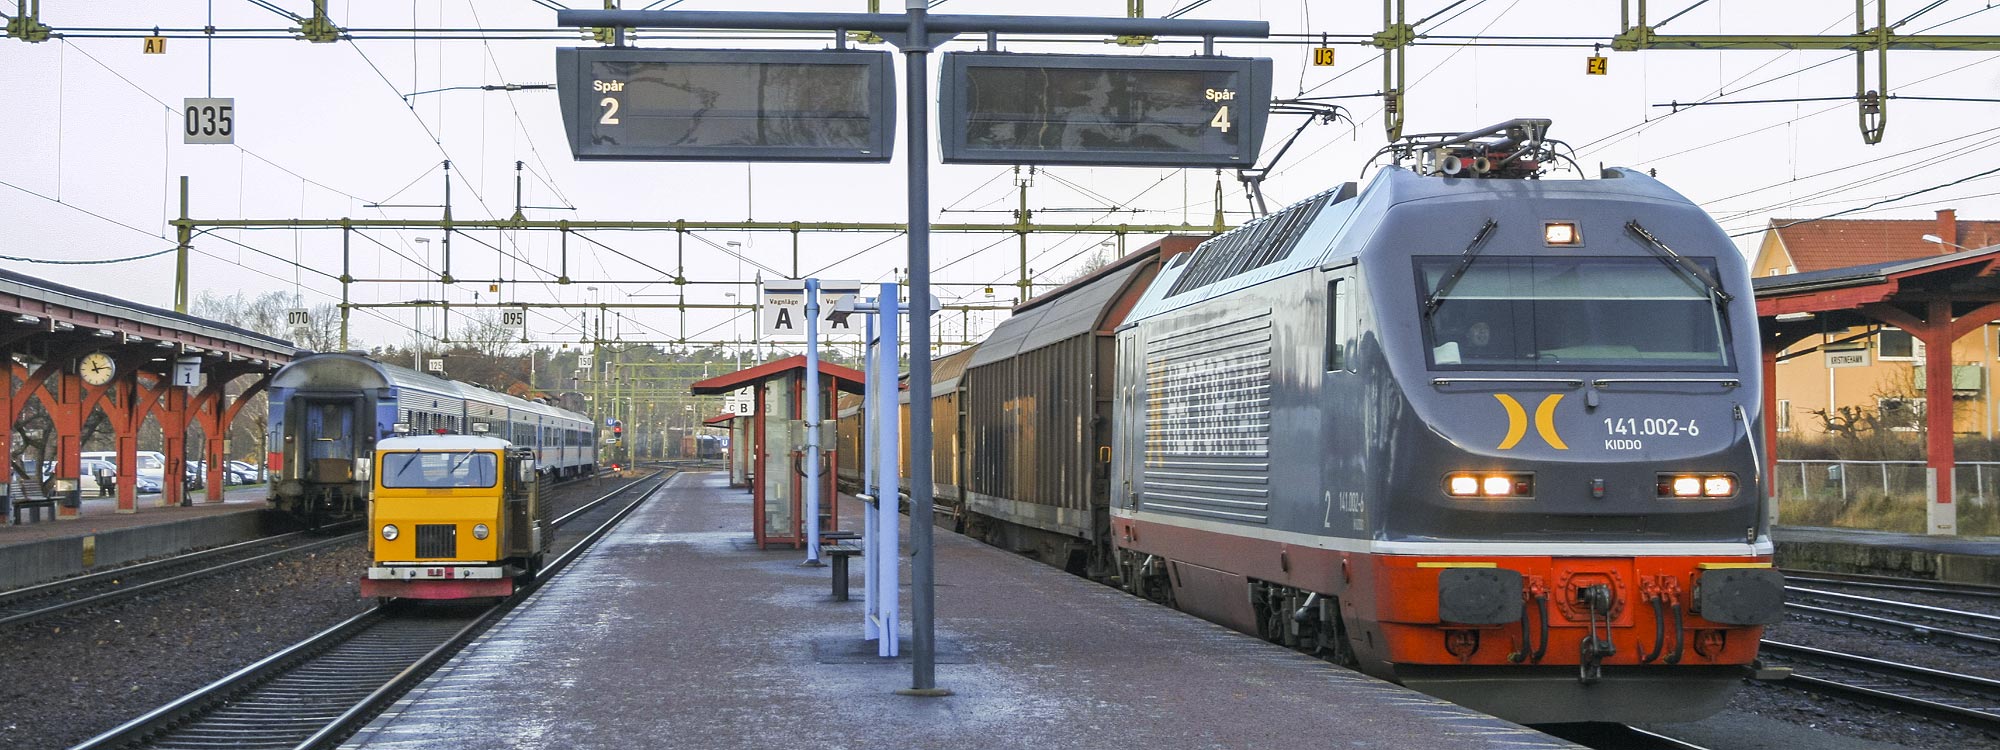 141 002-6 med godståg i Kristinehamn 2008